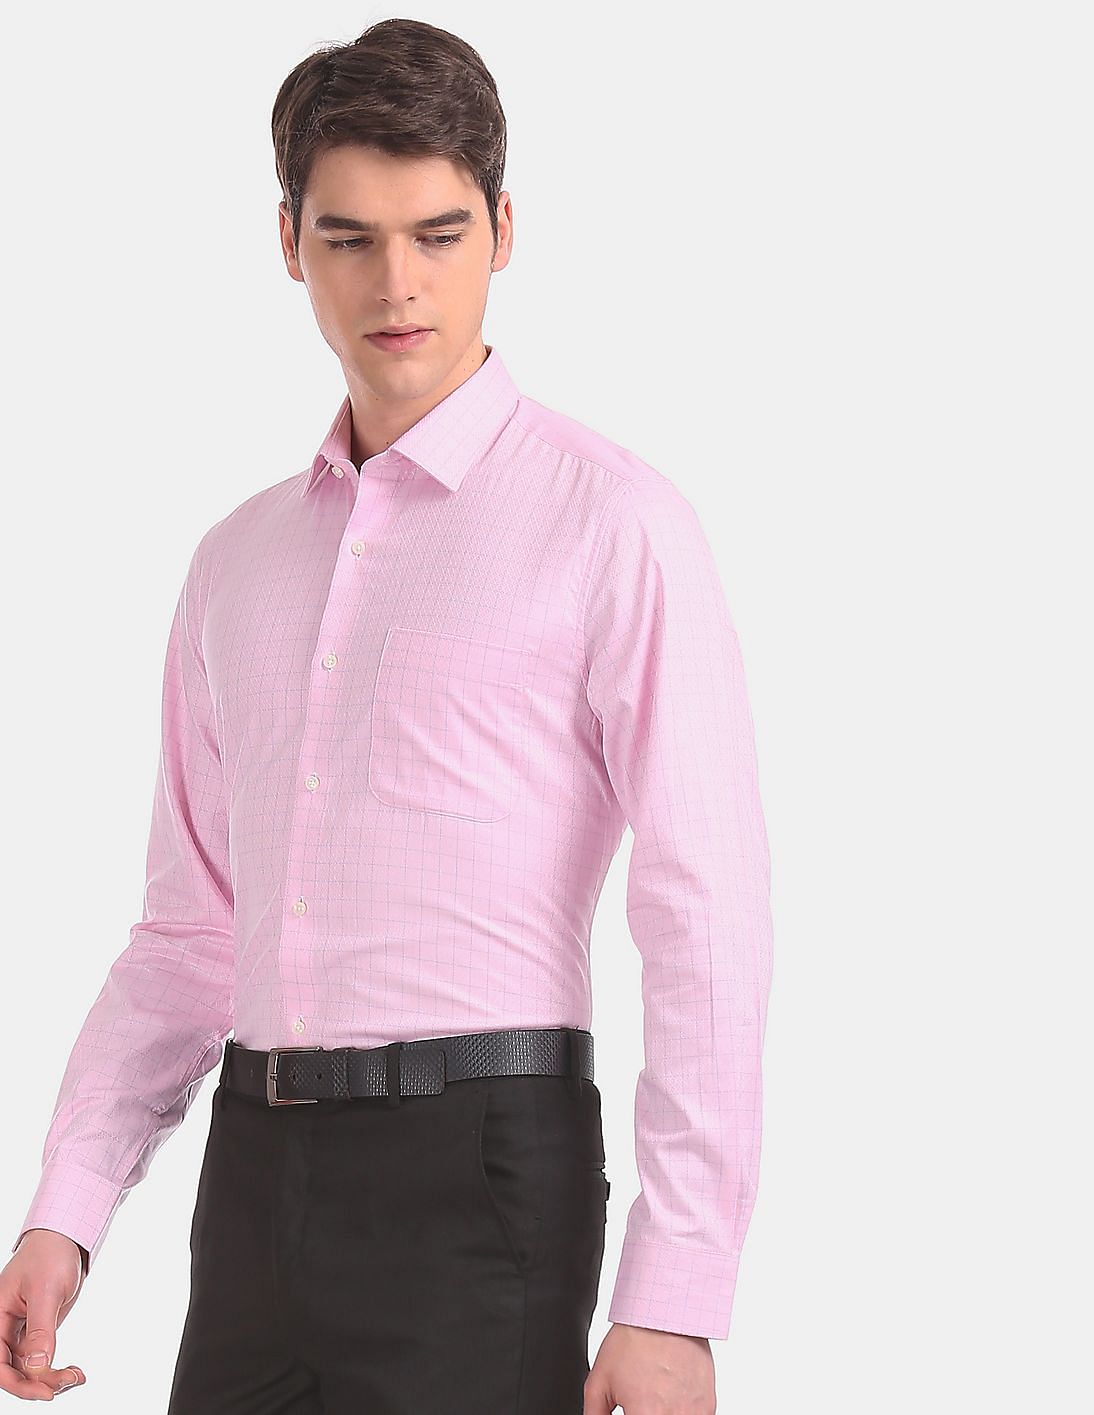 Buy Arvind Men Pink Regular Fit Patterned Check Formal Shirt - NNNOW.com